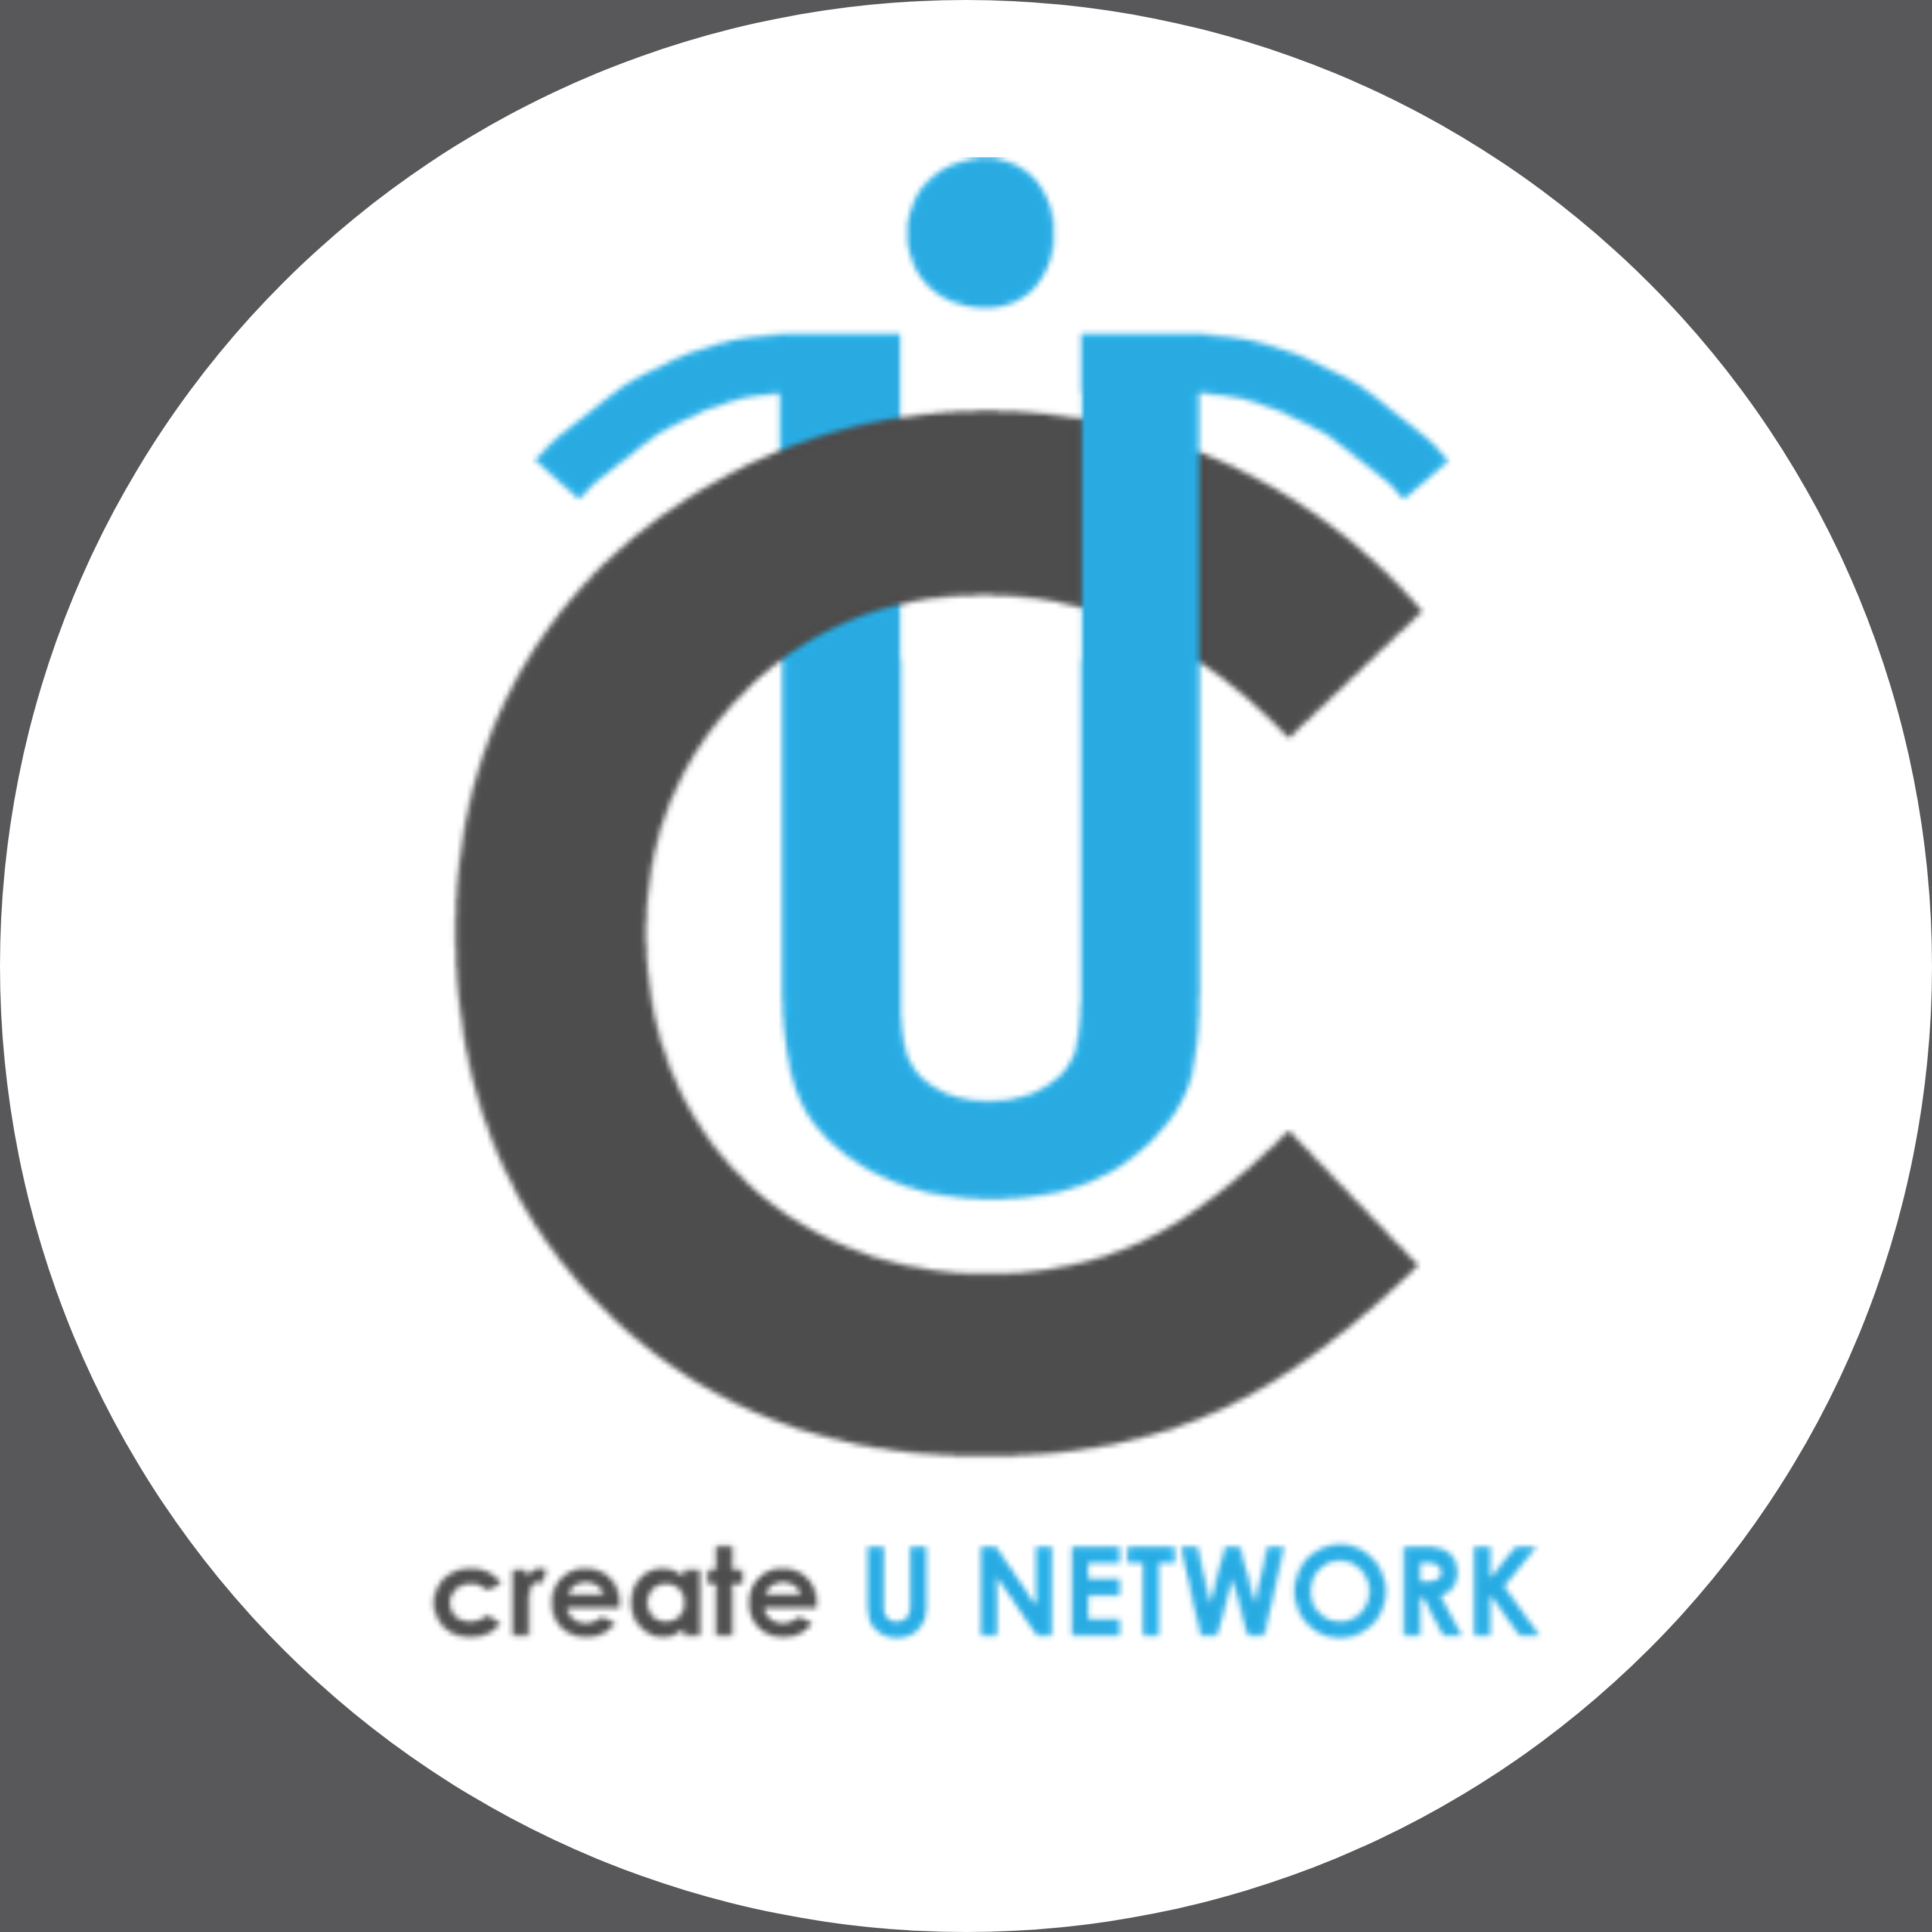 Create U NETWORK